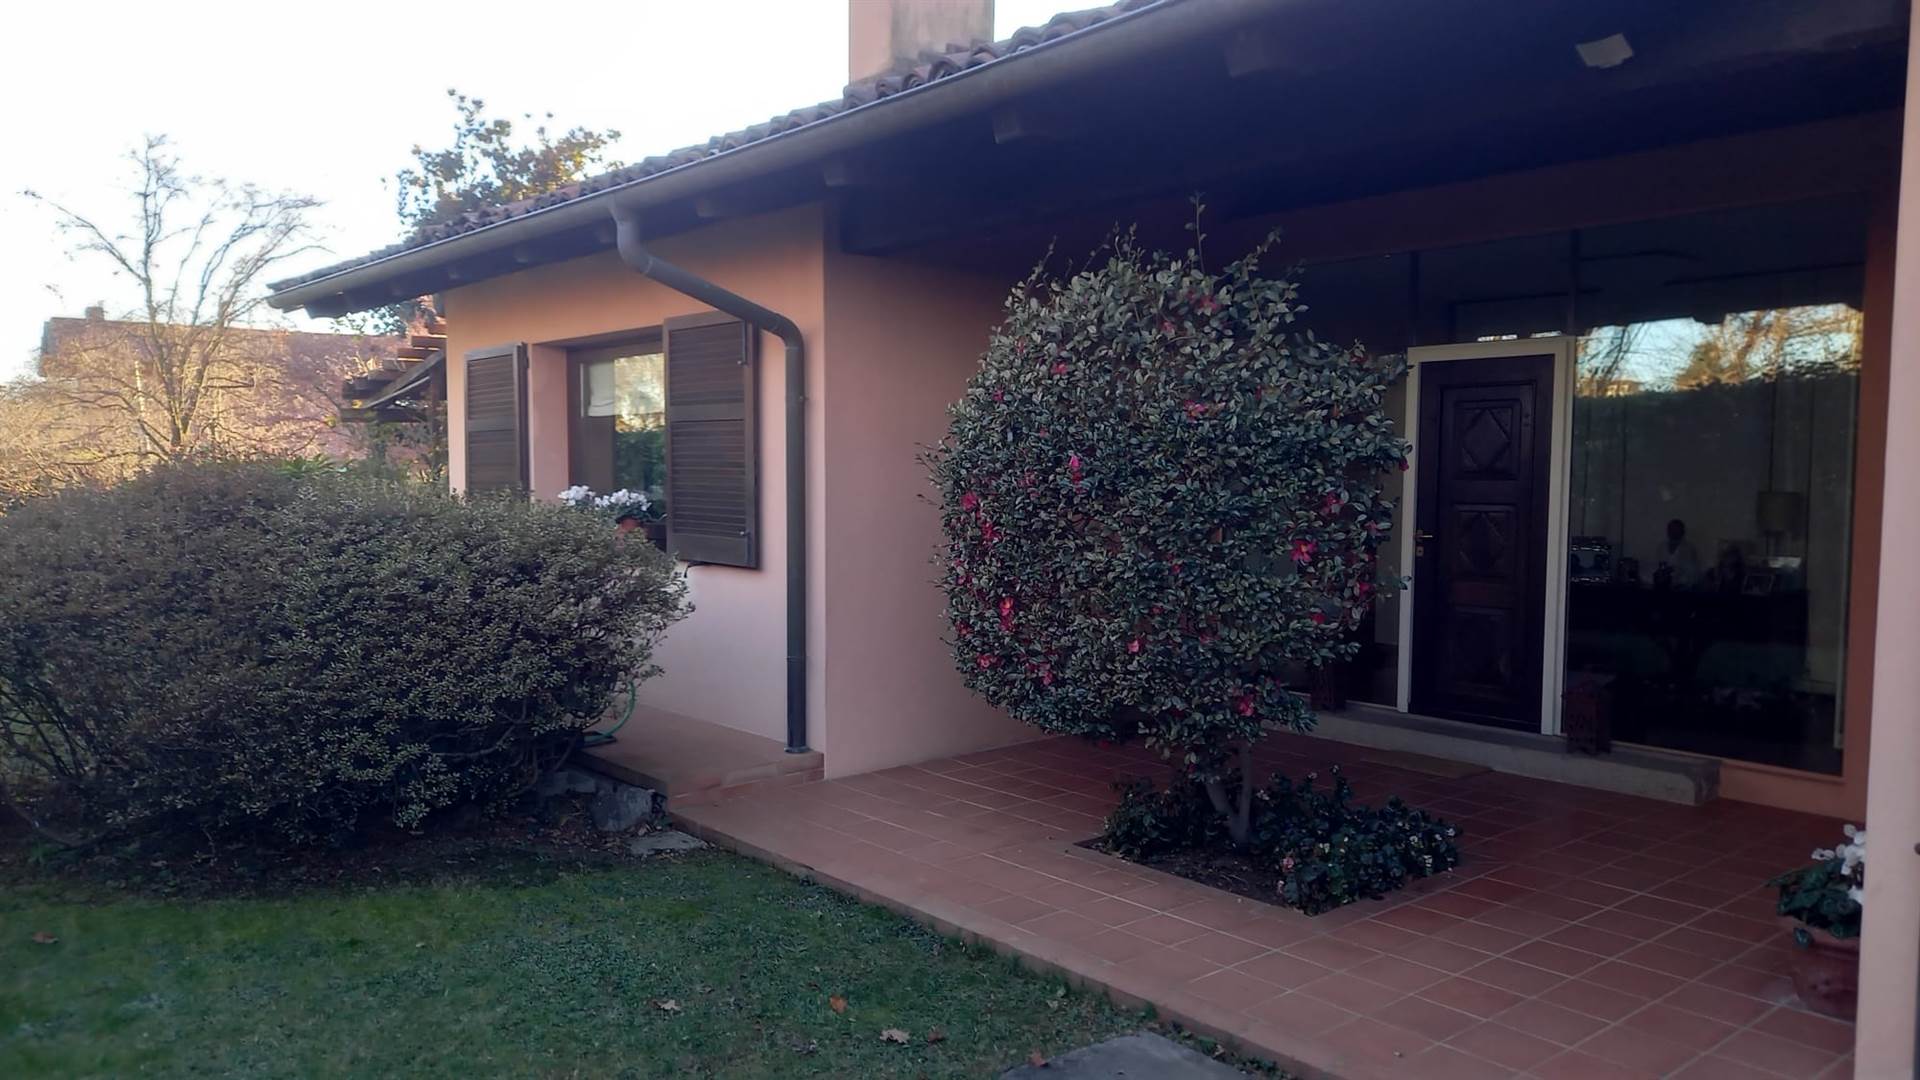 Villa in vendita a Biella, 8 locali, zona Località: OREMO / BARAZZETTO / VANDORNO, prezzo € 330.000 | PortaleAgenzieImmobiliari.it